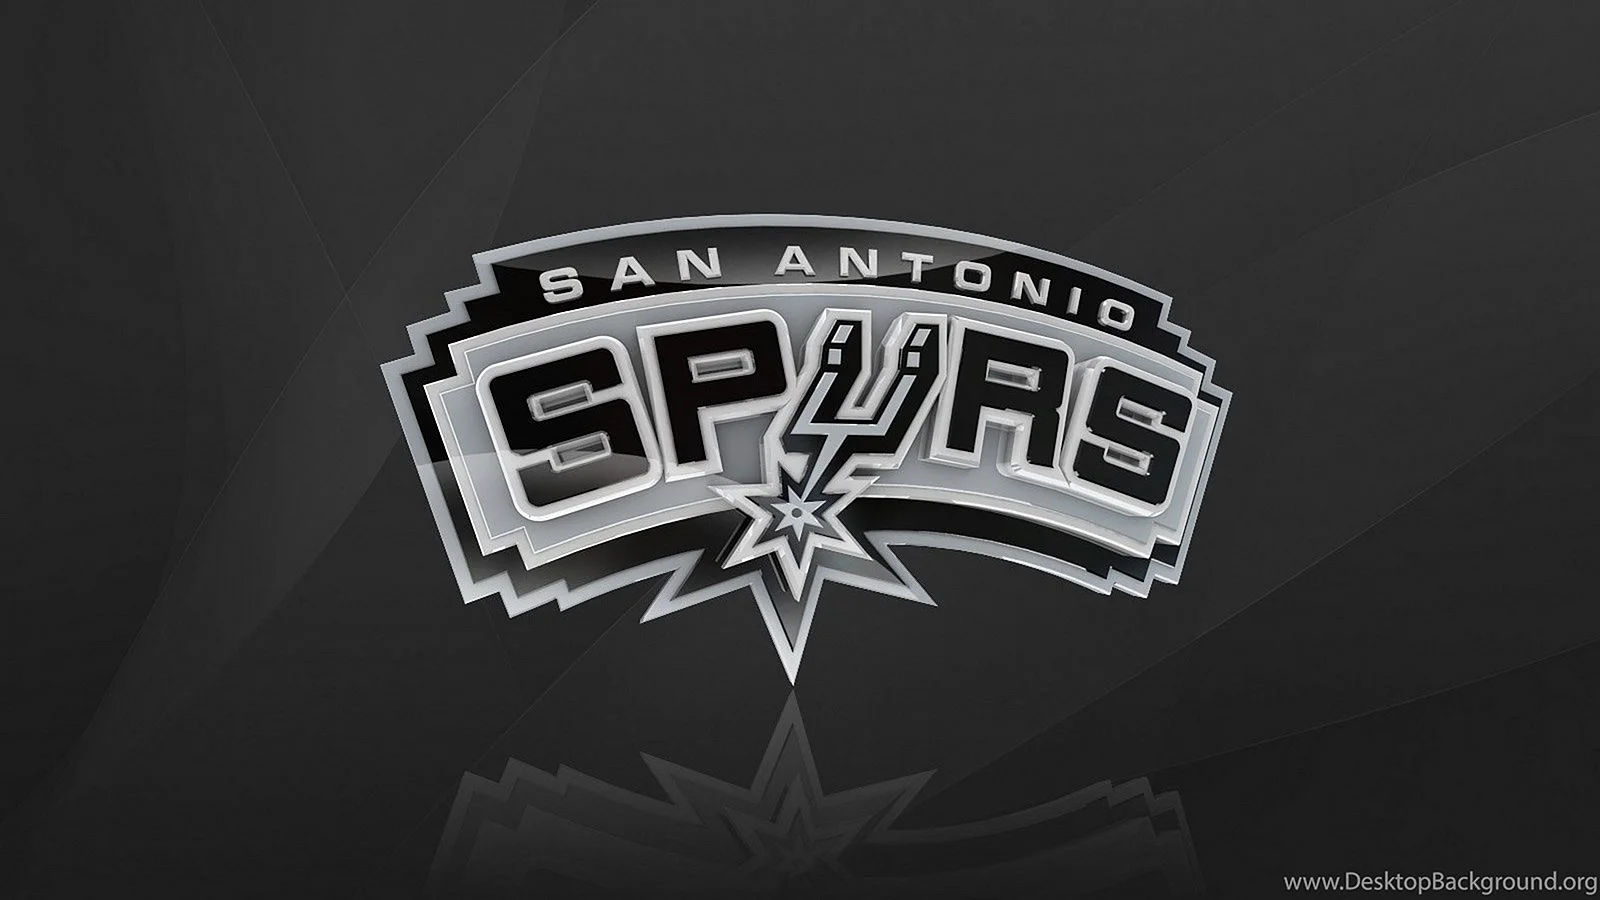 San Antonio Spurs Wallpaper